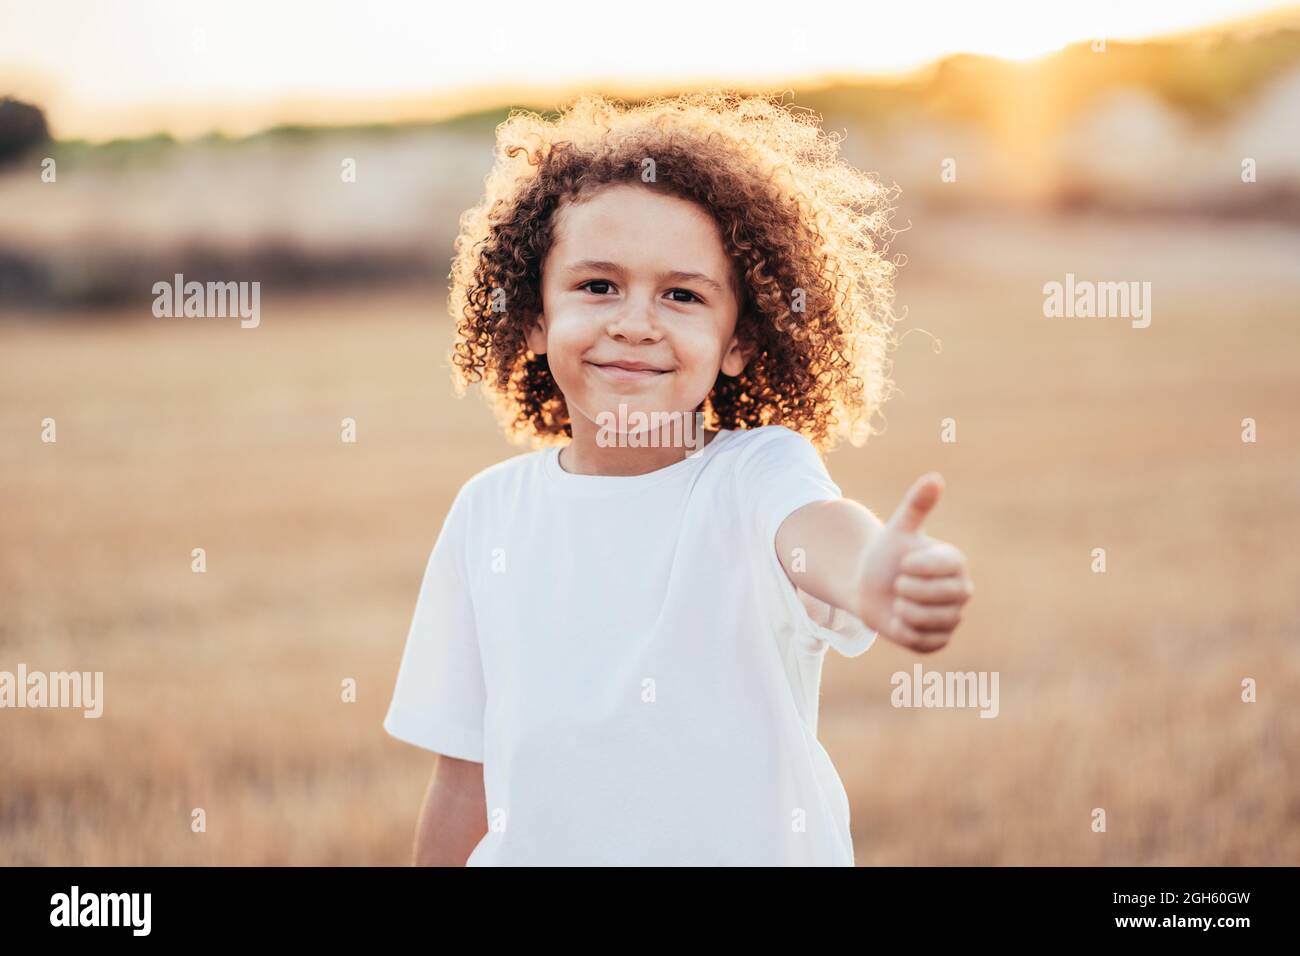 Bambino allegro etnico con capelli ricci che mostrano come un gesto mentre si trova in campo asciutto in estate in retroilluminazione e vondolando alla macchina fotografica Foto Stock